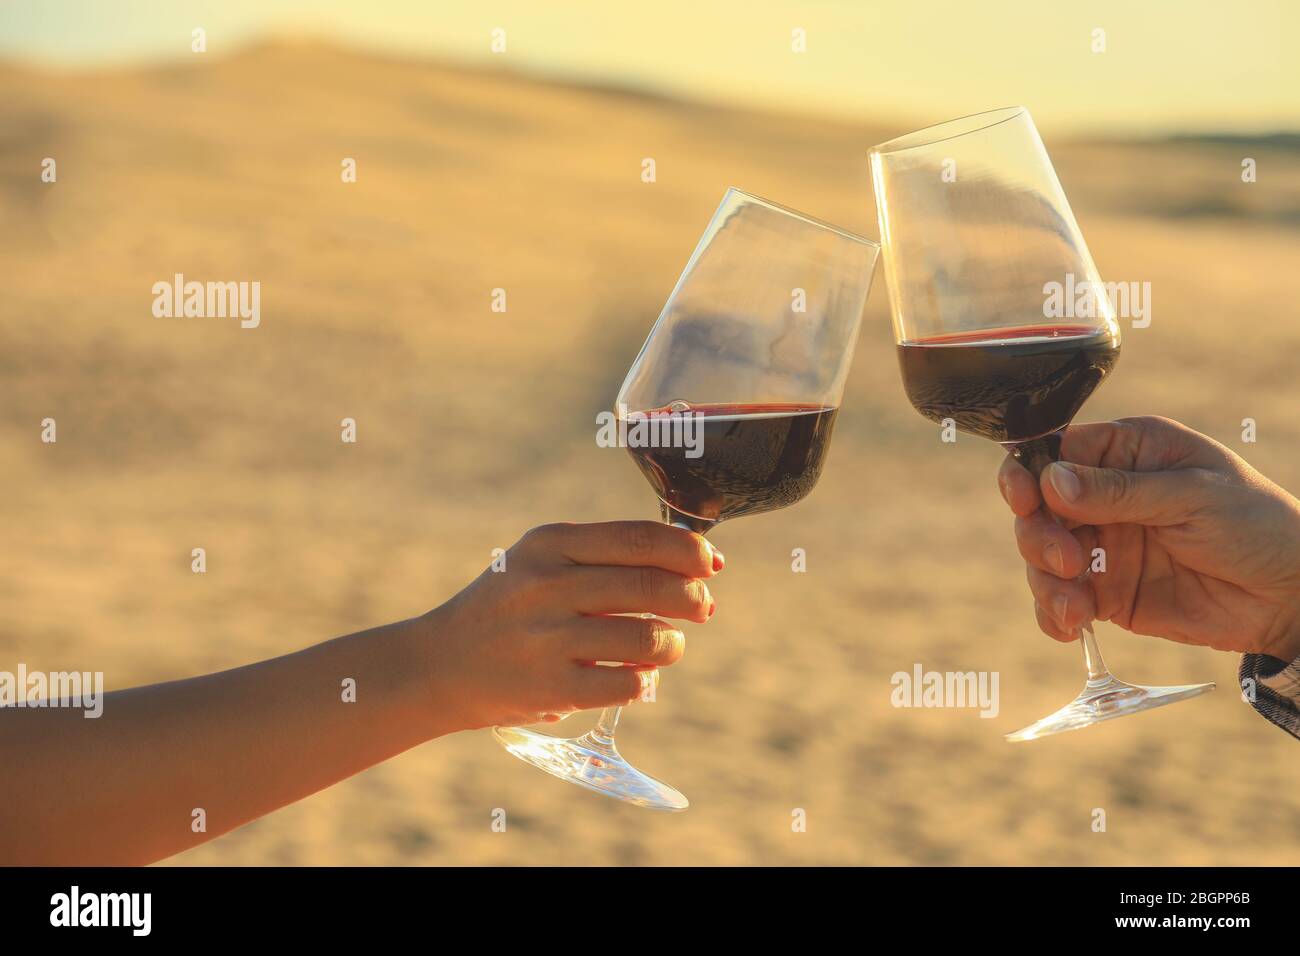 Hände halten Rotweingläser auf Dune von Pyla während des Sonnenuntergangs, Feier Konzept Stockfoto